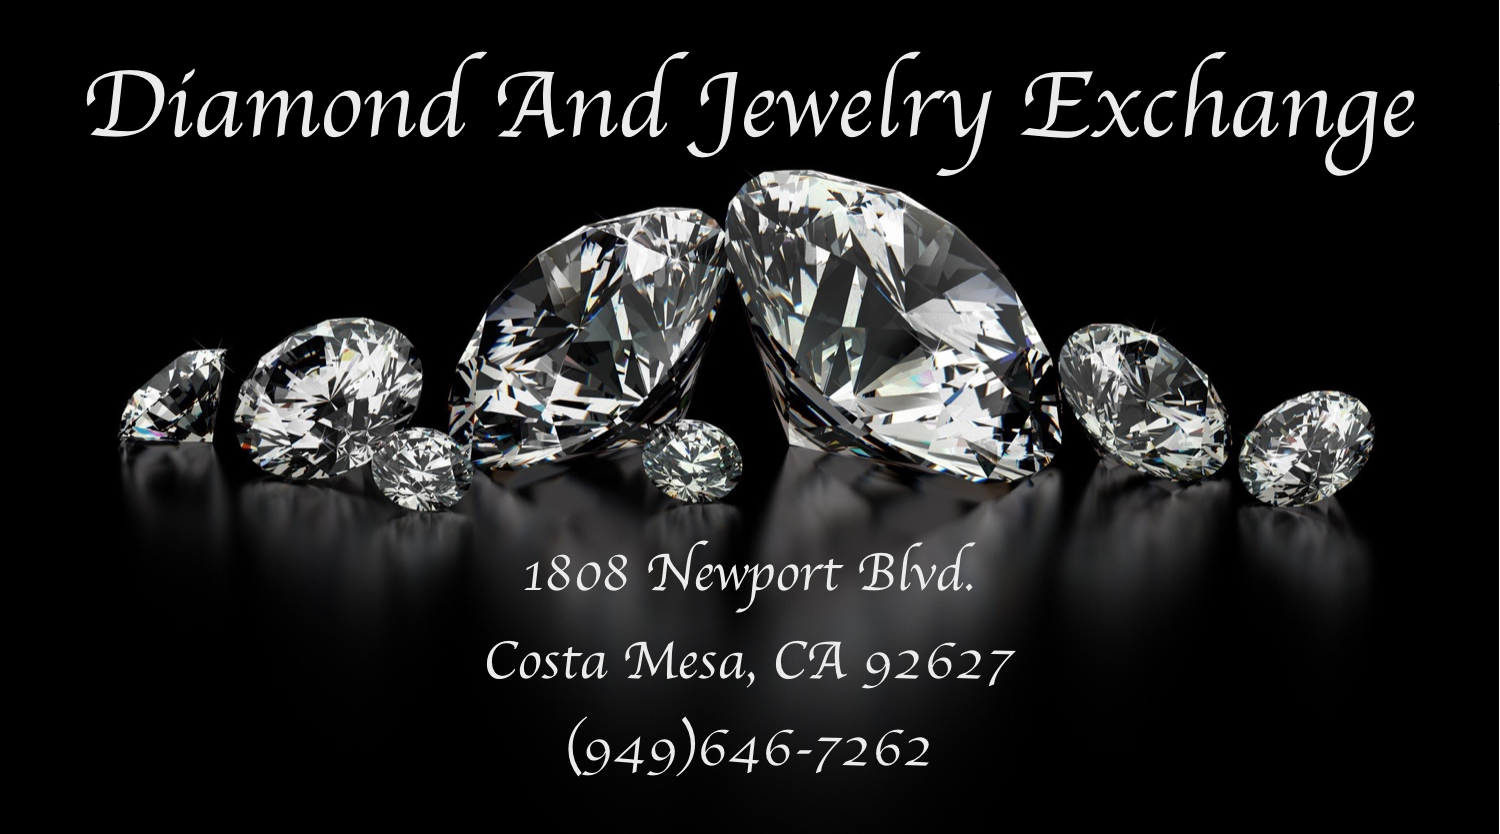 Diamond And Jewelry Exchange Photo